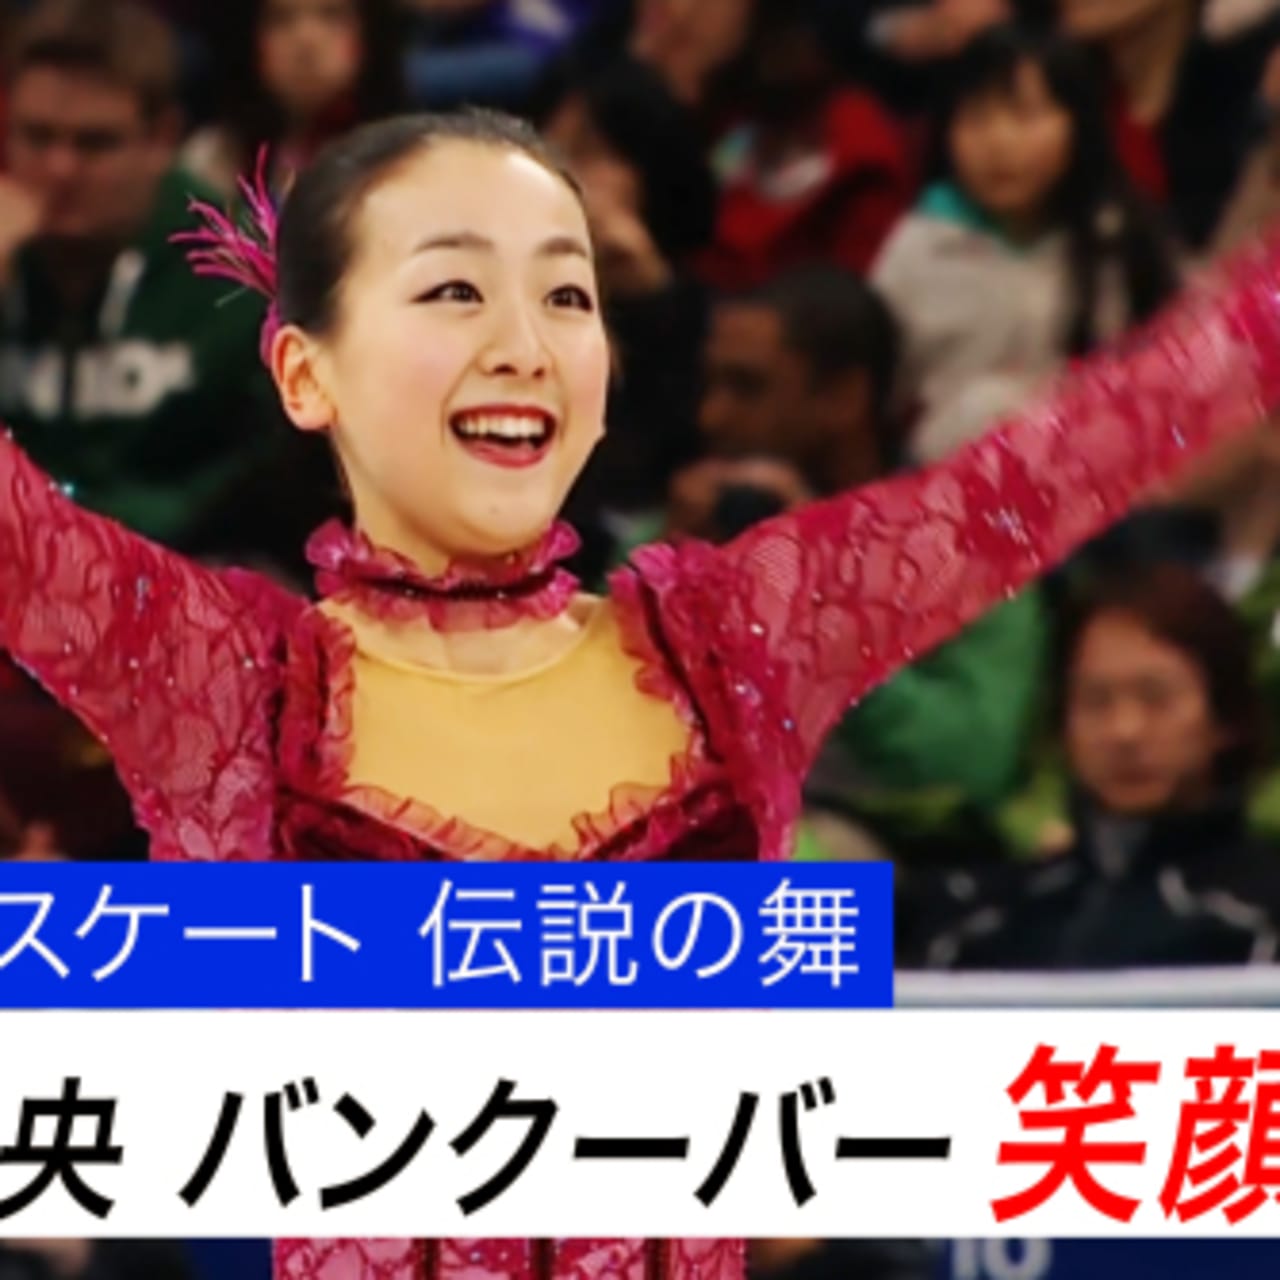 フィギュアスケート伝説の舞 浅田真央 銀メダルに輝いた名演技